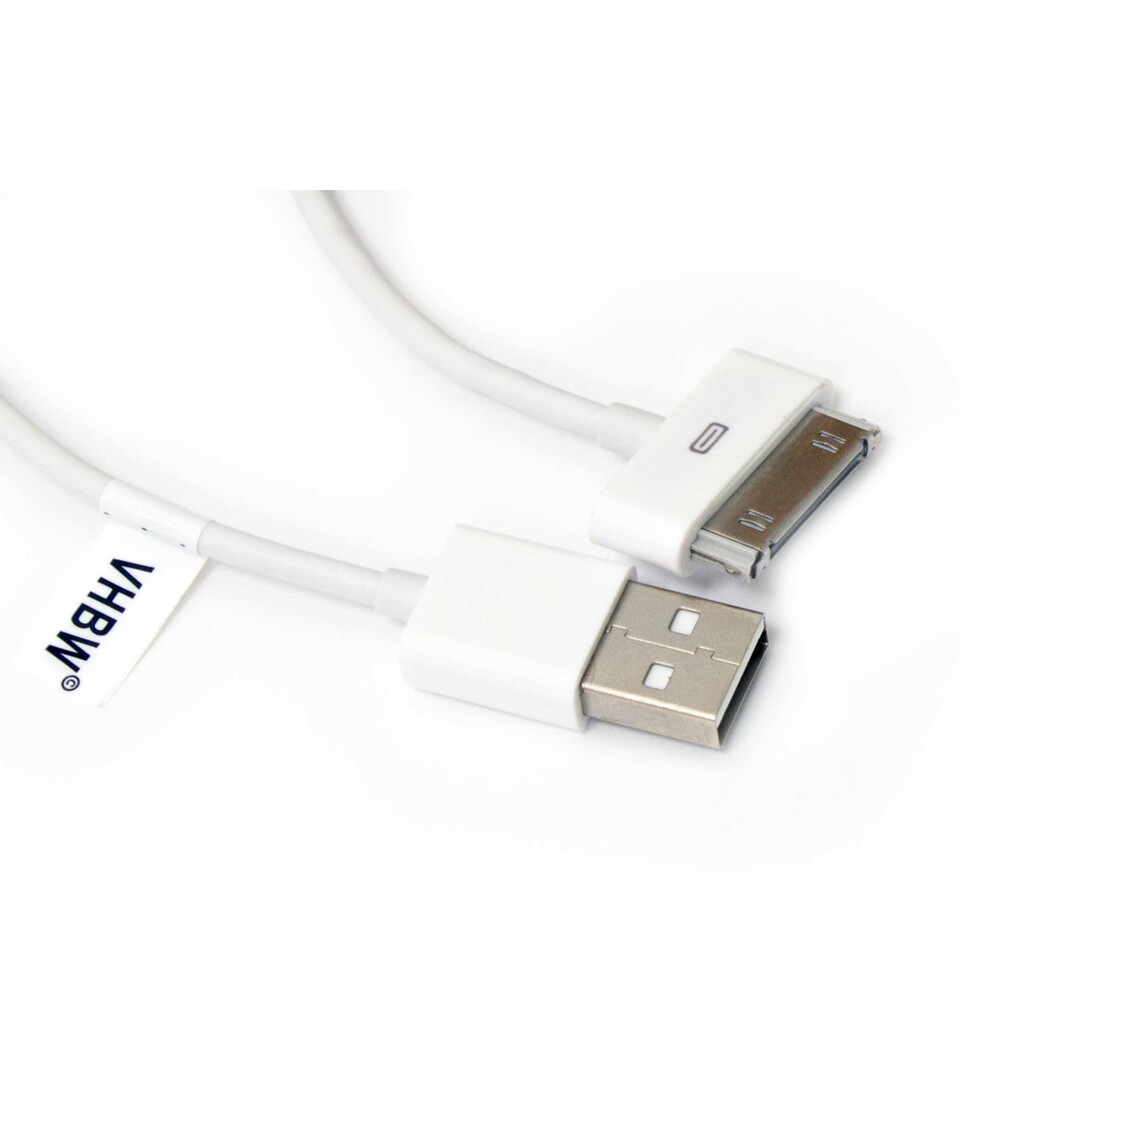 Vhbw - vhbw câble de données USB (type A sur iPod) compatible avec Apple iPod Touch 3 Gen. - A1318, Touch 4 Gen. - A1367 lecteur MP3 - blanc - Alimentation modulaire